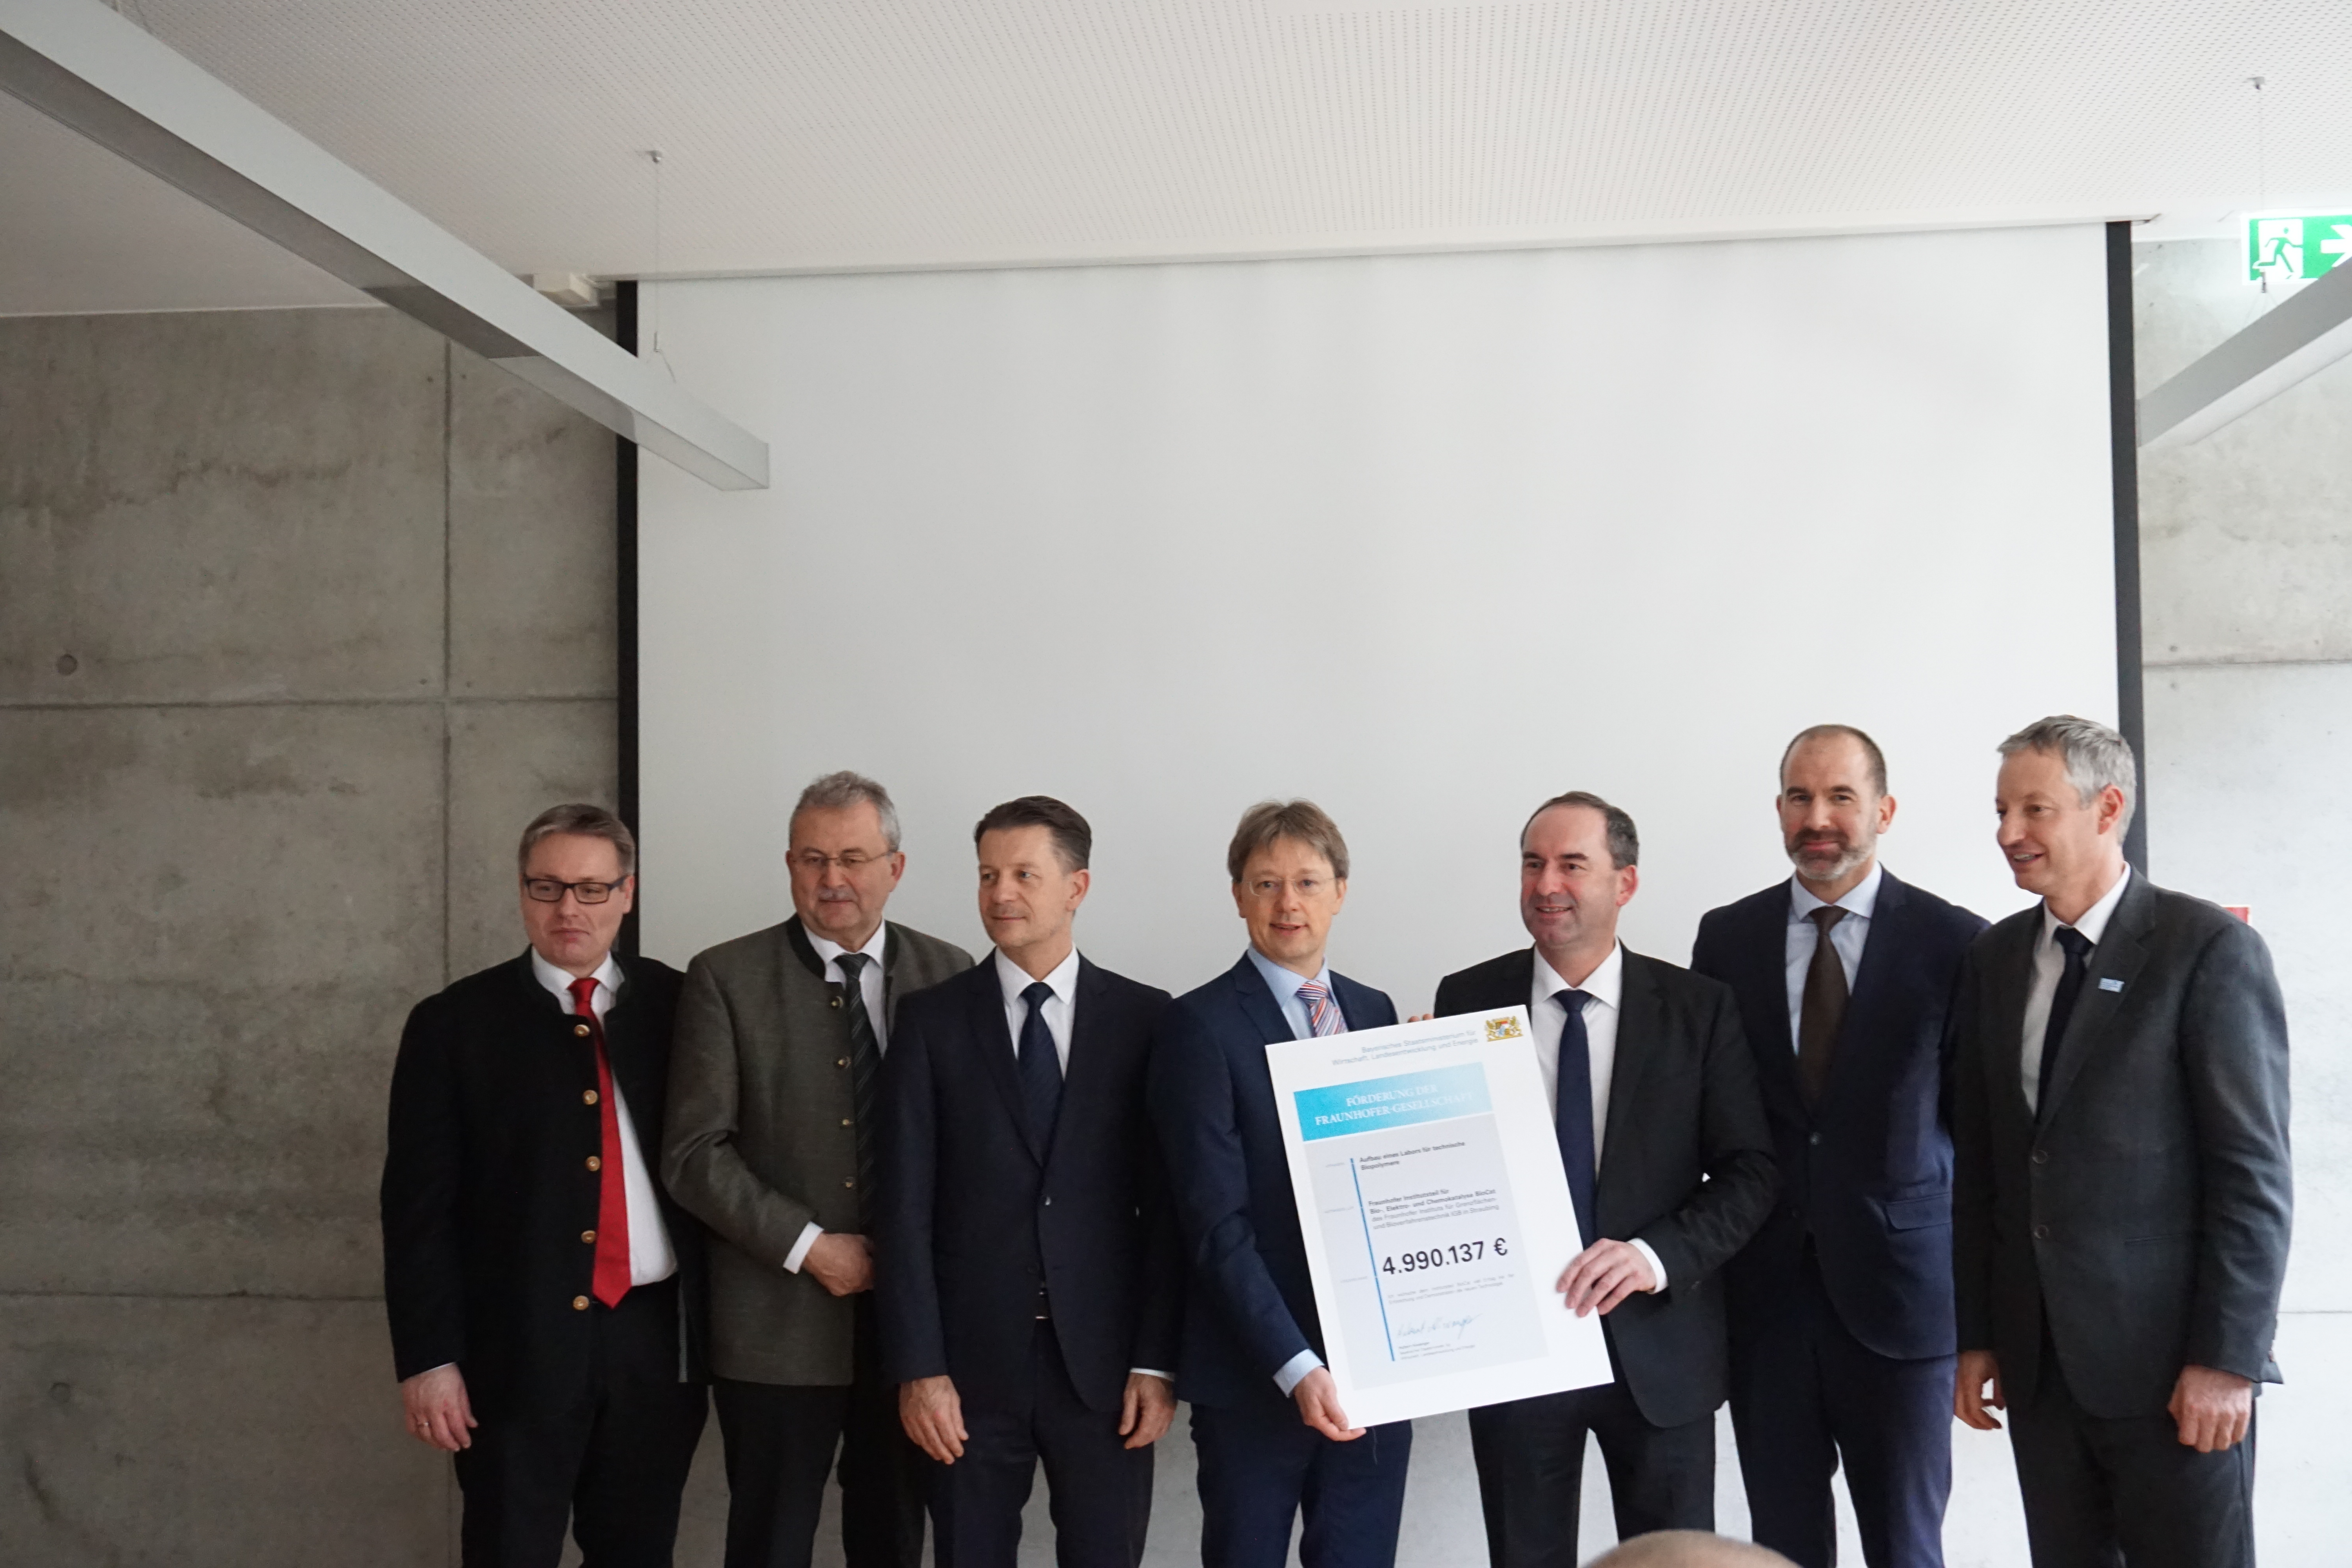 Übergabe des Zuwendungsbescheids für das Labor für Technische Biopolymere bei BioCat in Straubing durch den bayerischen Wirtschaftsminister Aiwanger.